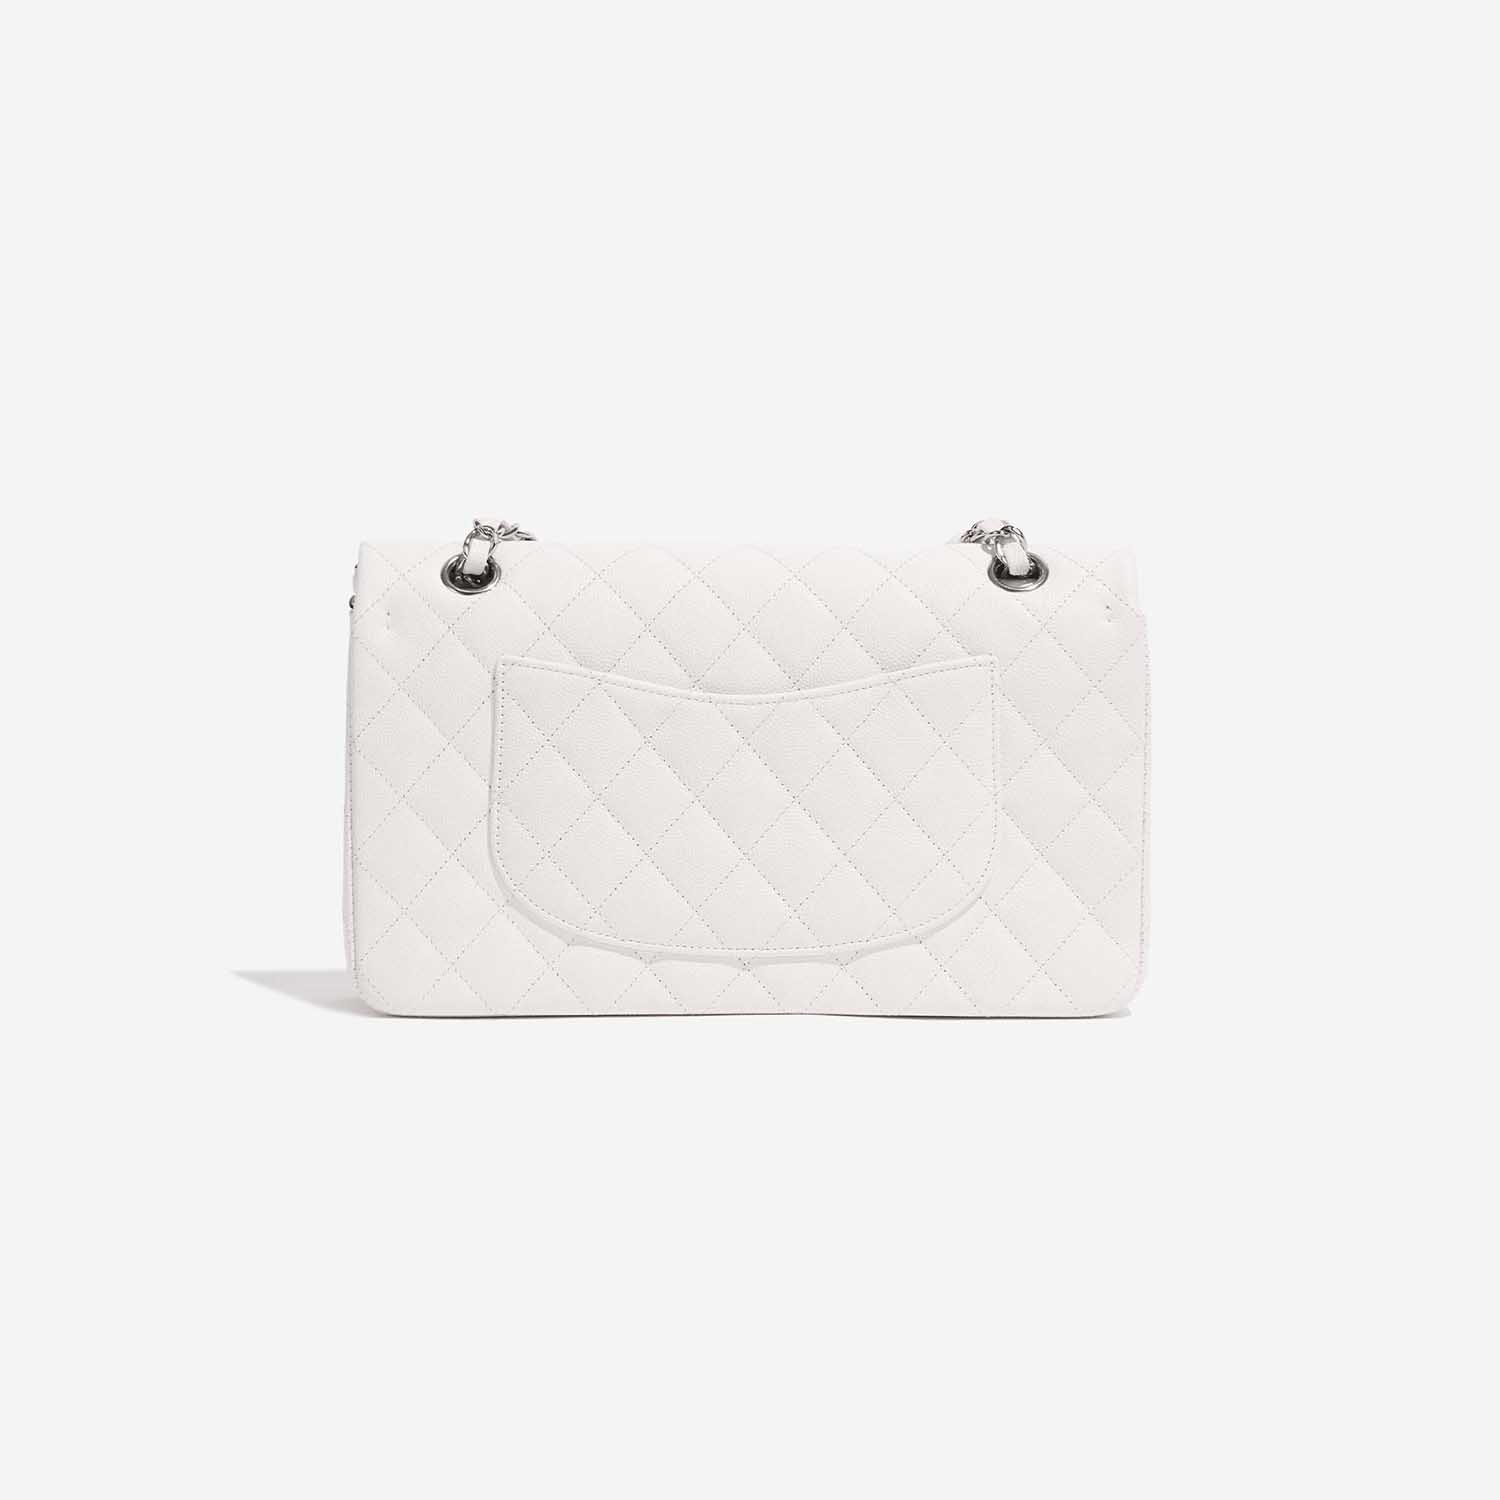 Chanel Timeless Medium White Back | Verkaufen Sie Ihre Designer-Tasche auf Saclab.com